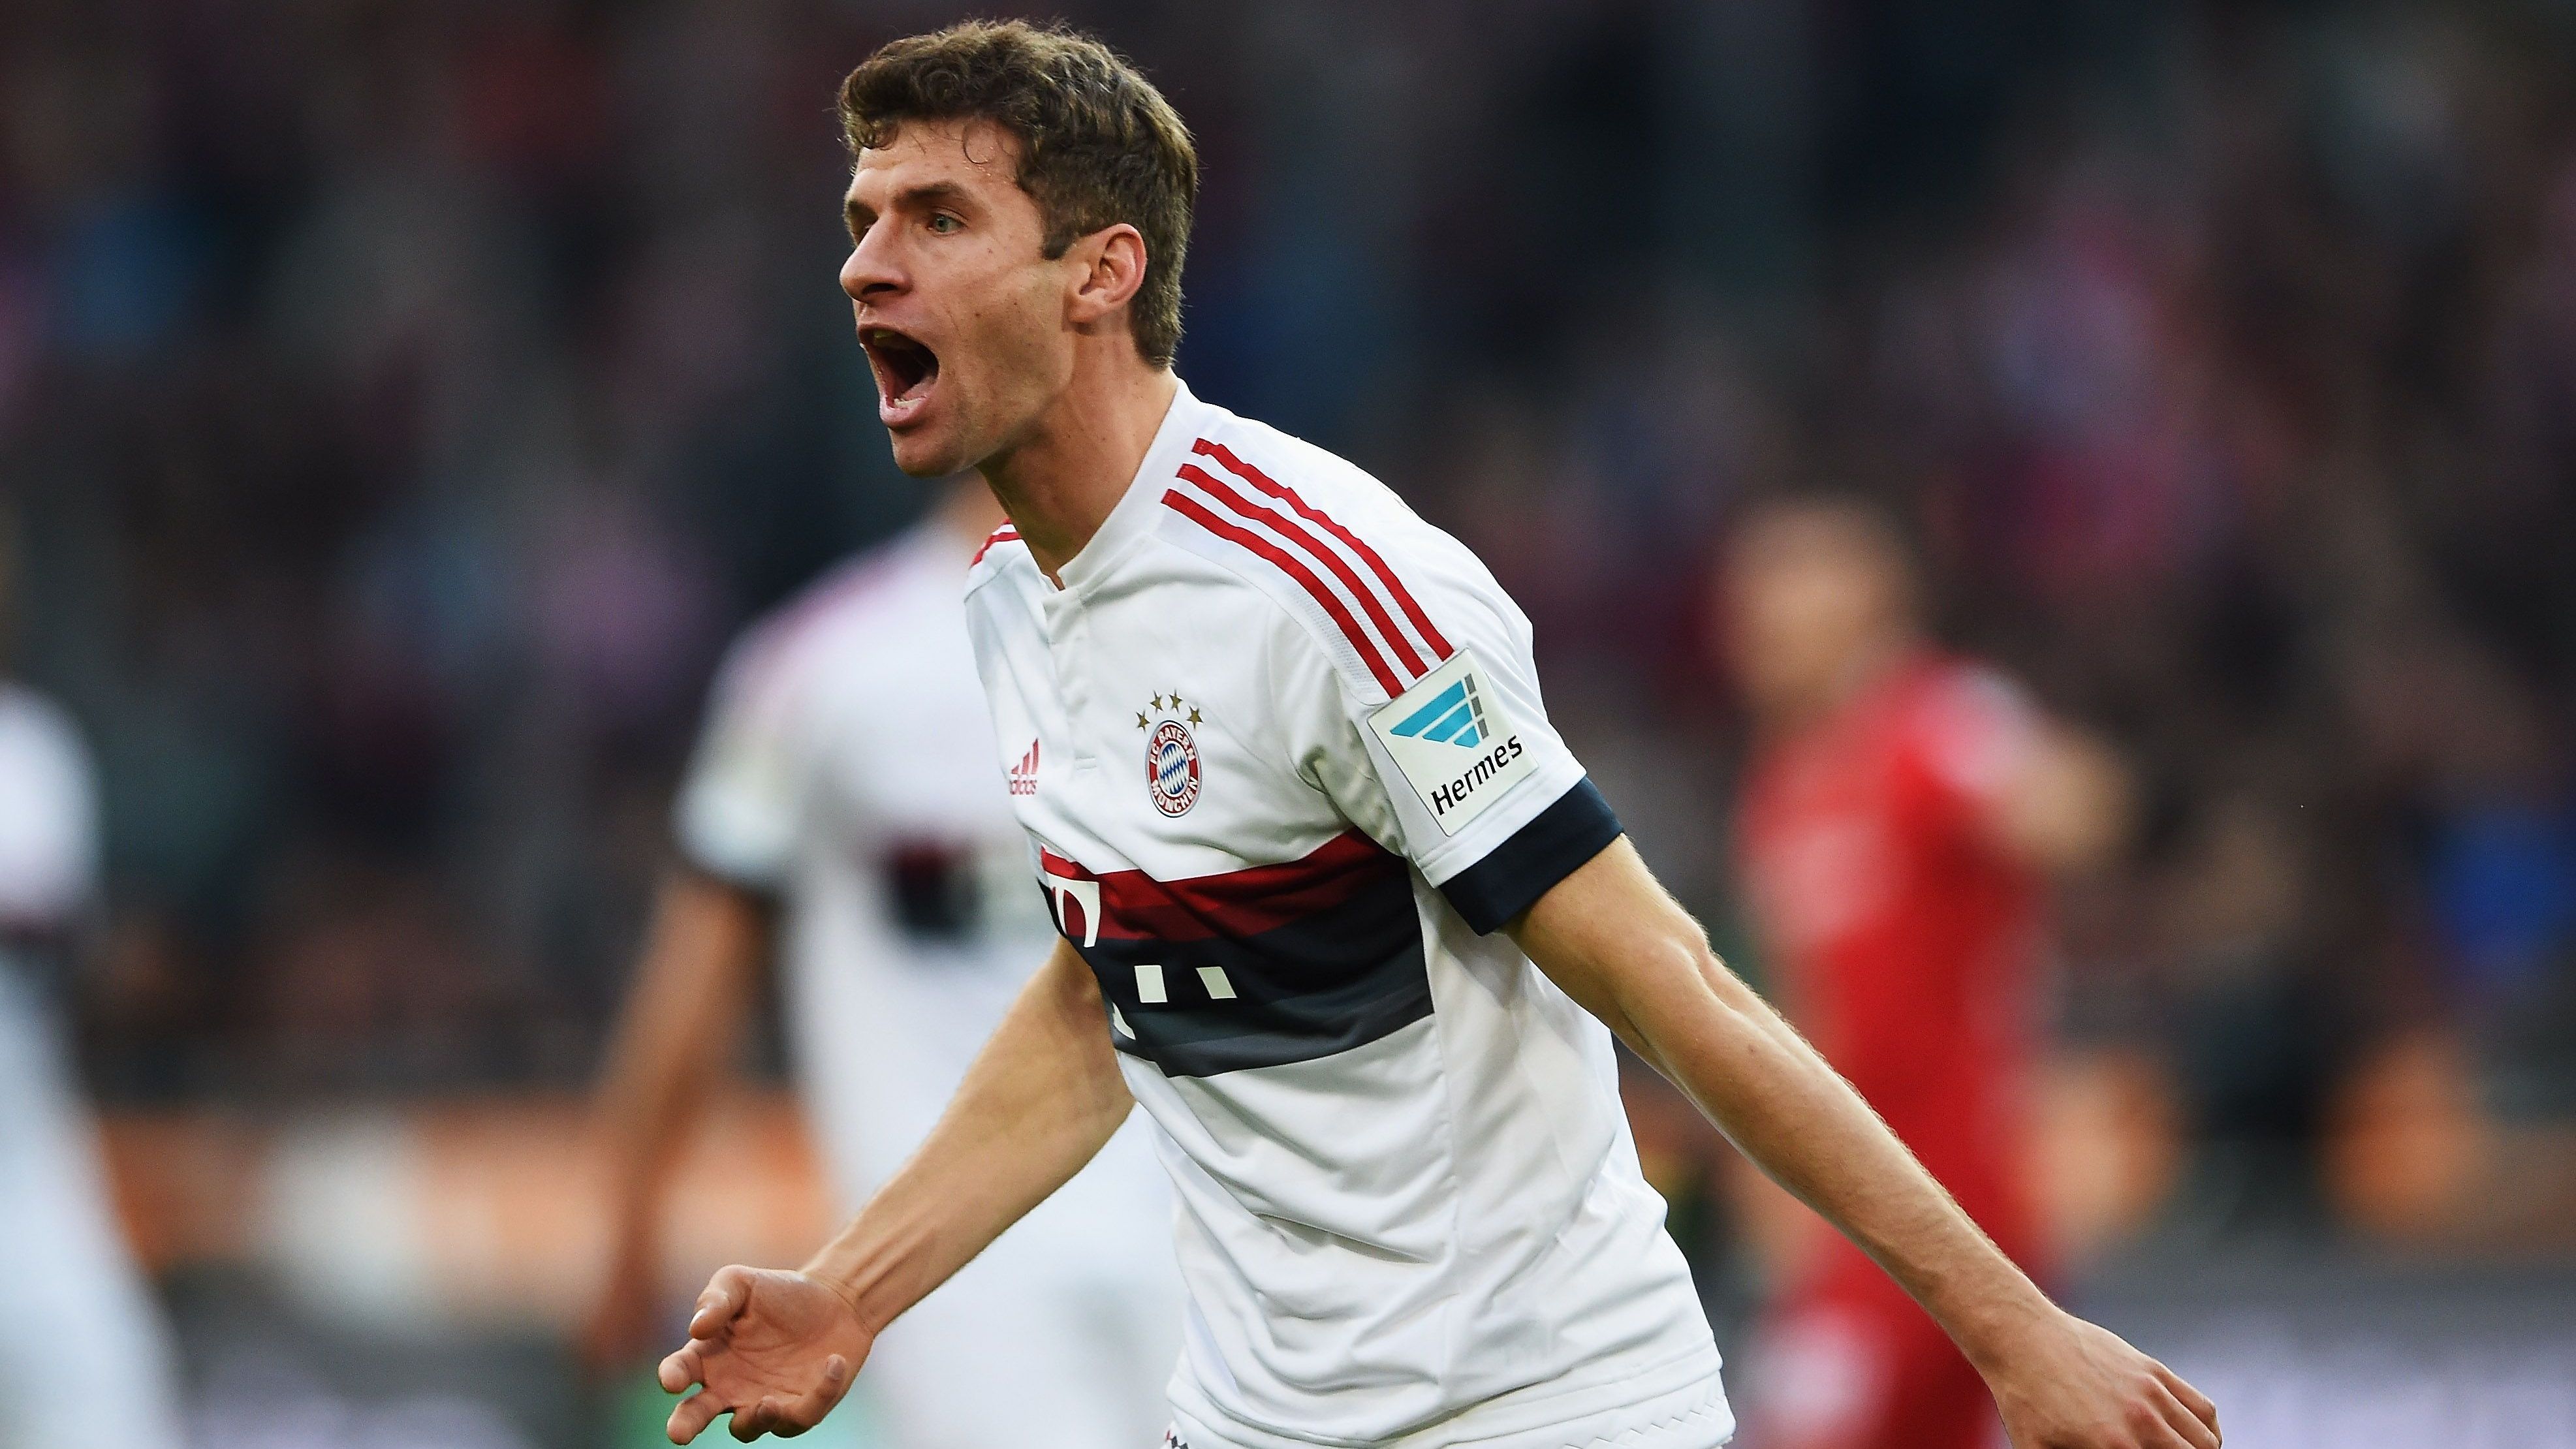 <strong>Sechs Tore: Thomas Müller</strong>&nbsp;<br><strong>Saison:</strong> 2015/16<br><strong>Verein:</strong> FC Bayern München